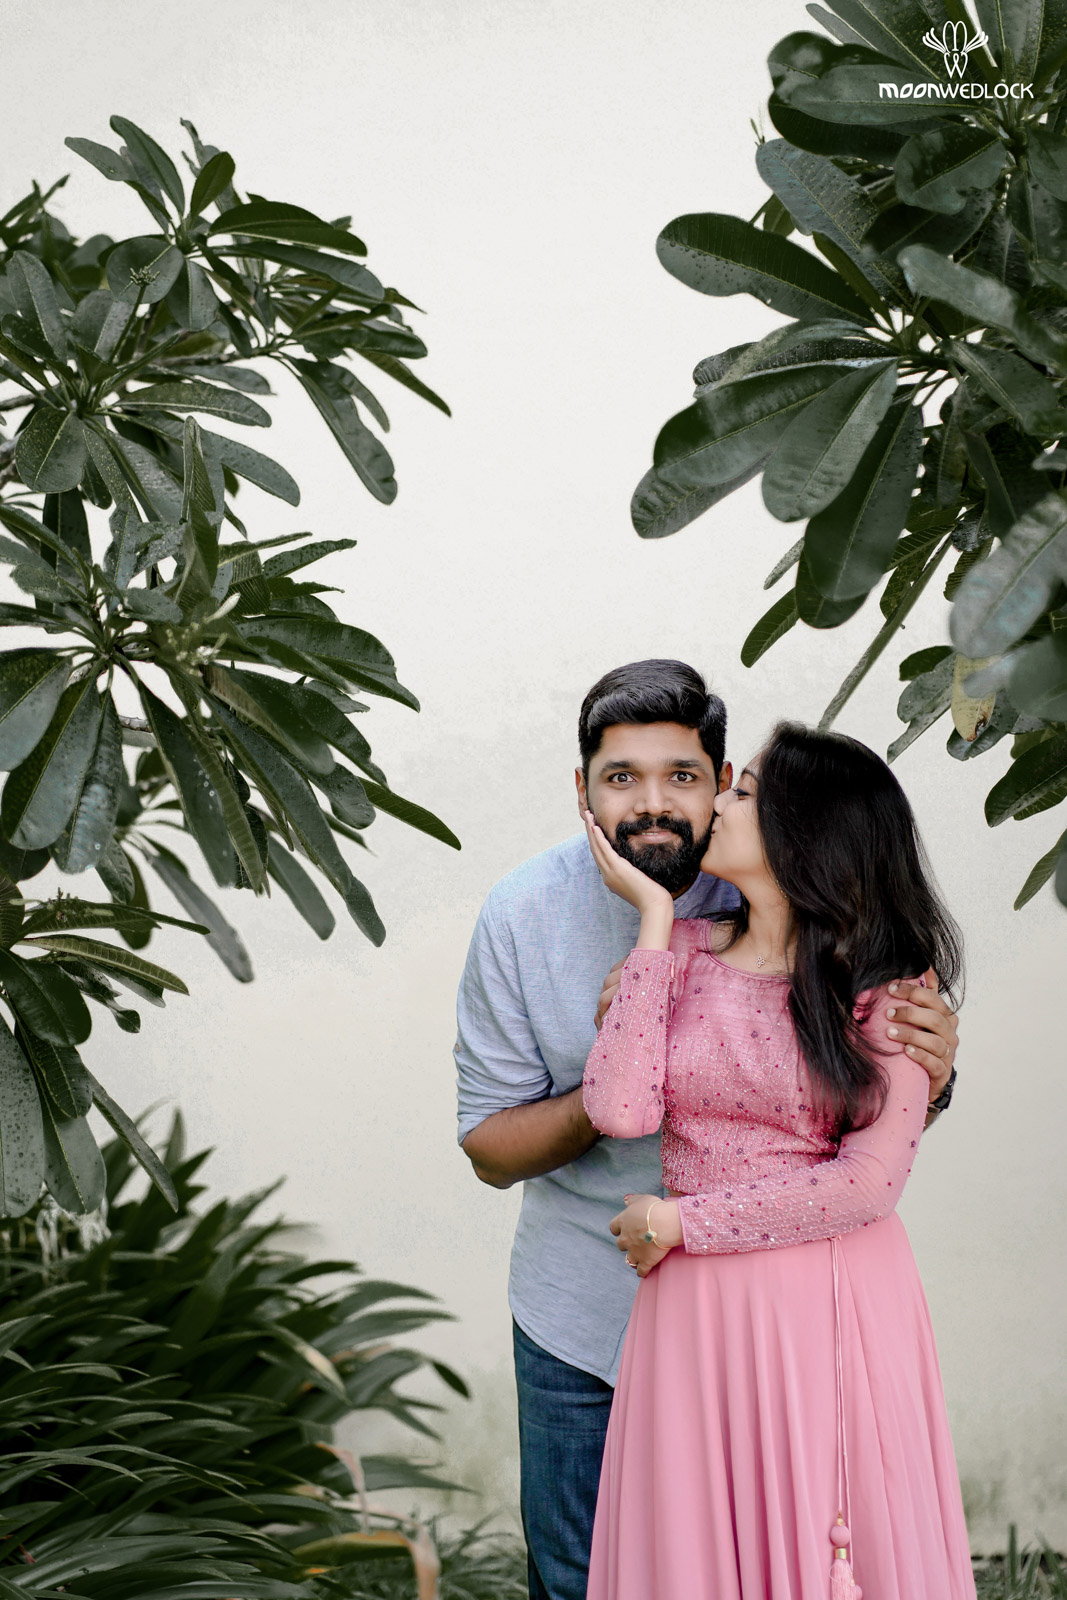 wedding-photographers-in-bangalore -moonwedlock (45)